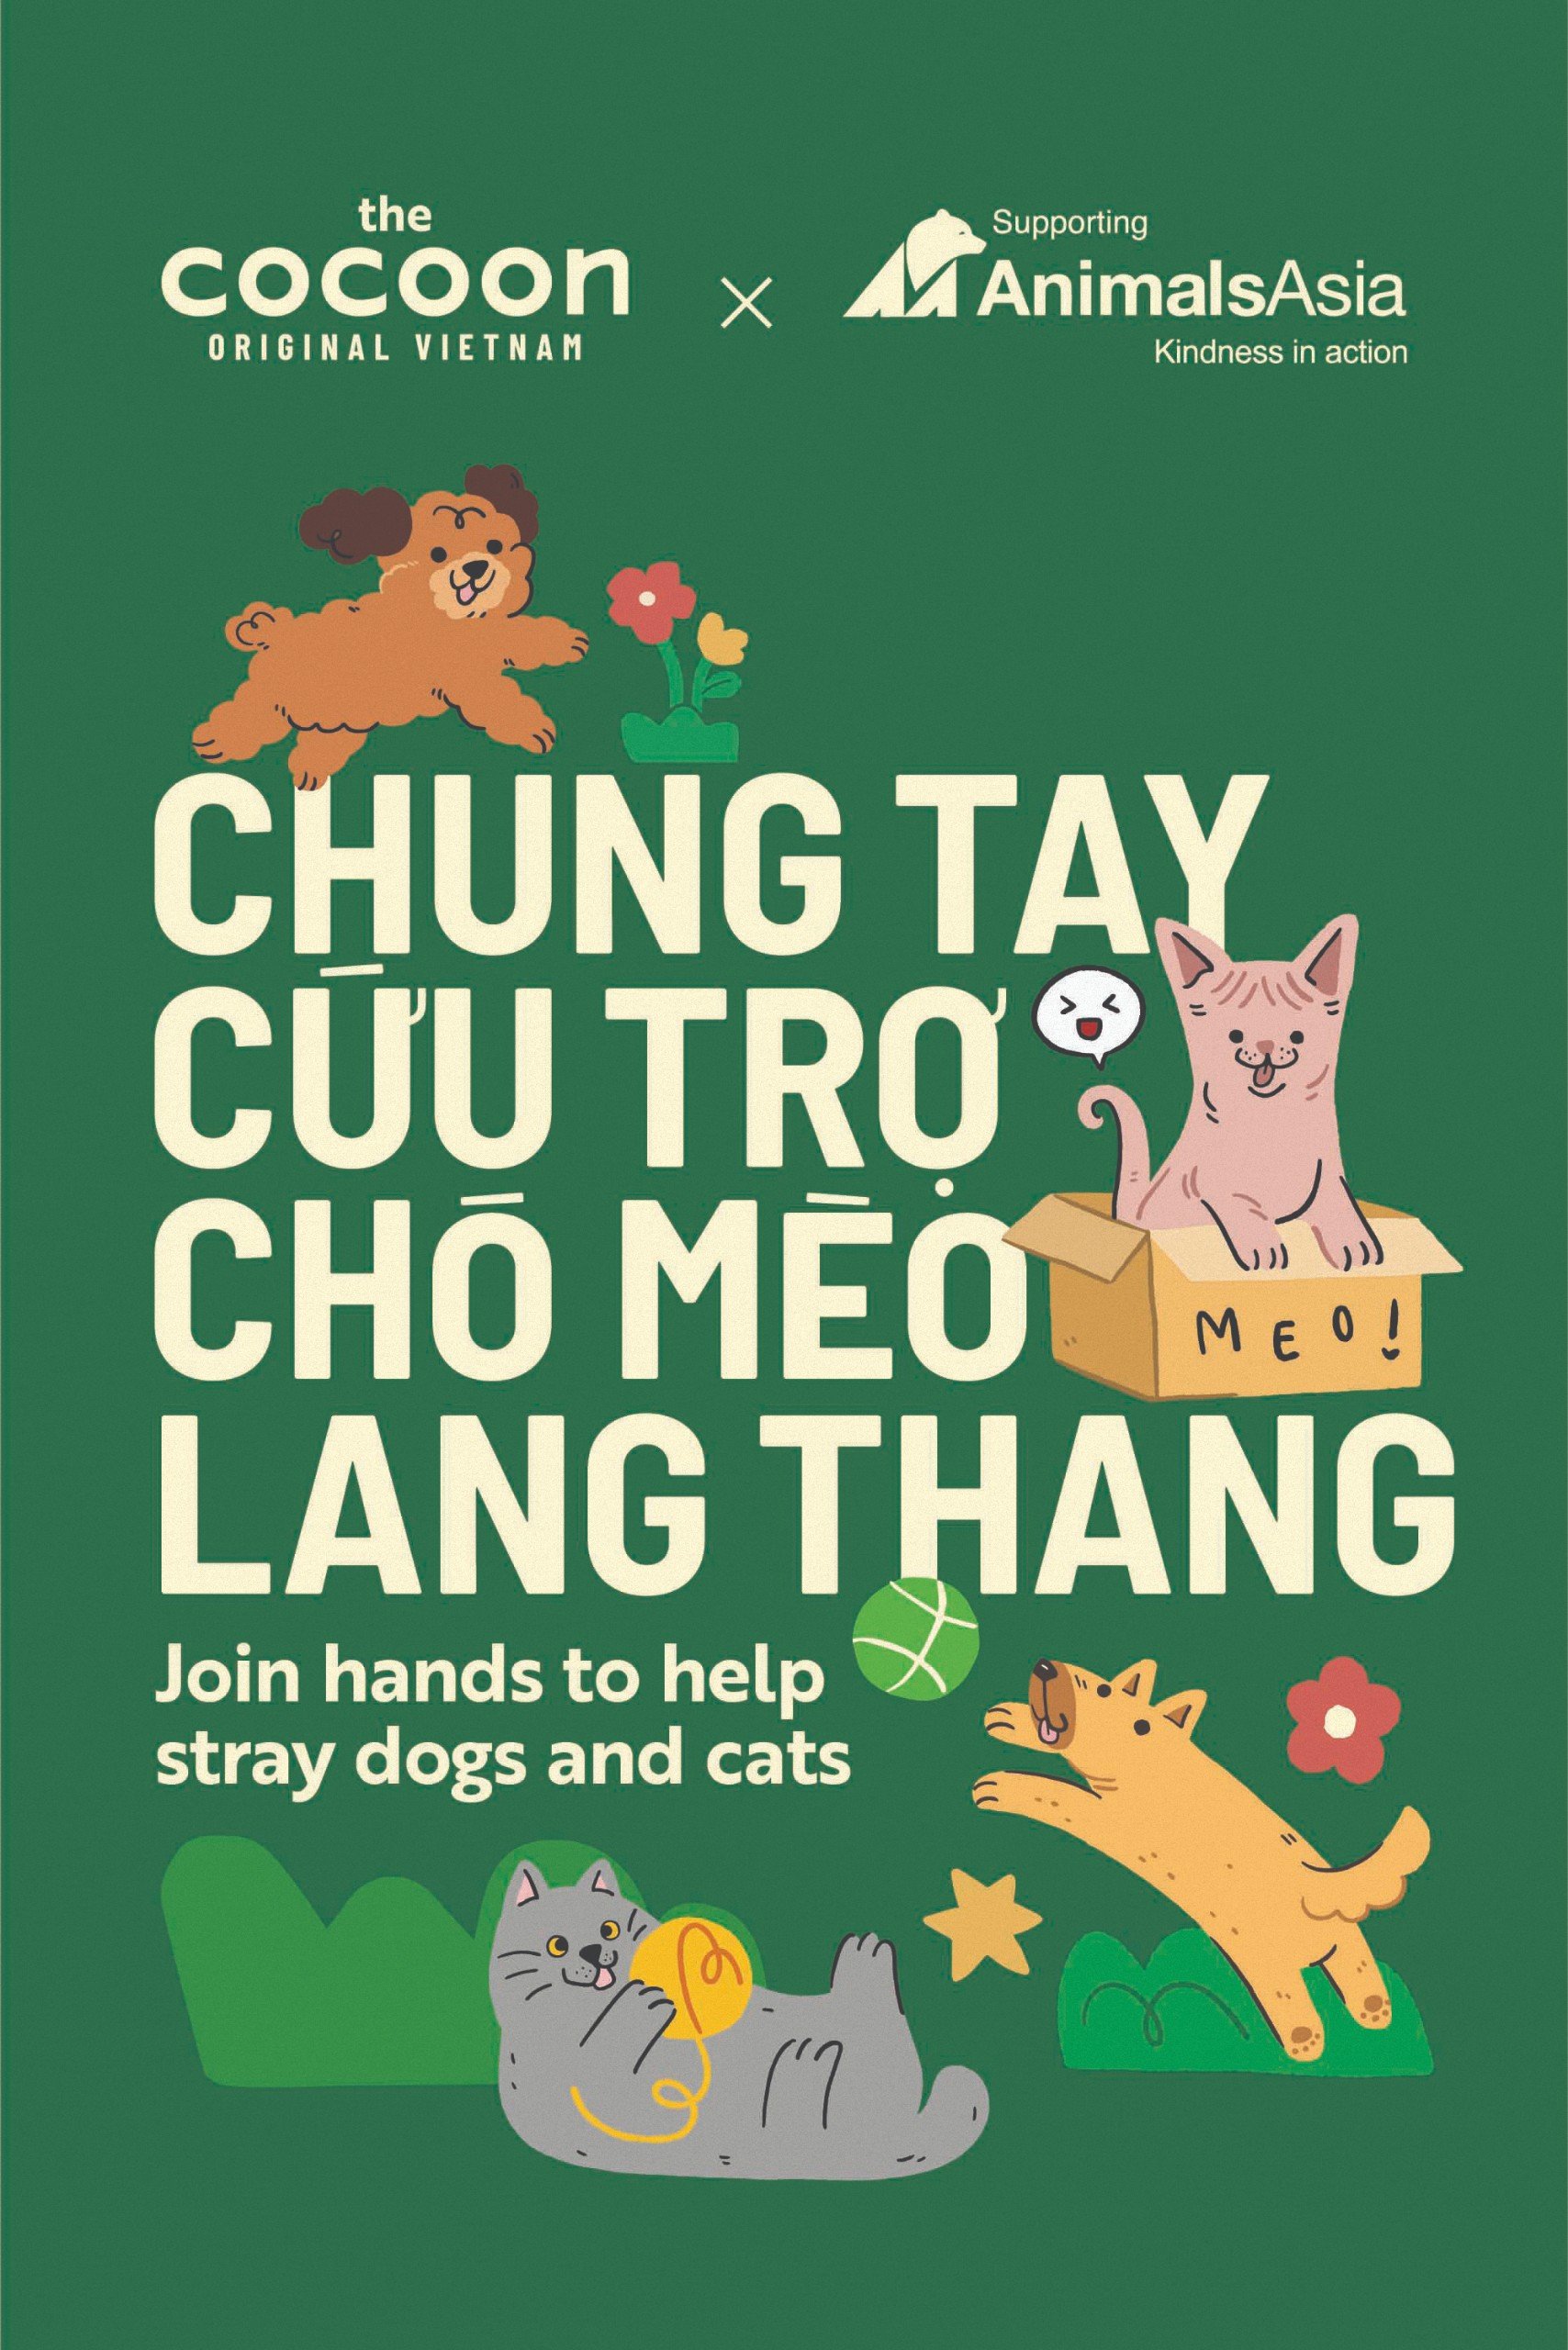 Cocoon x AAF: Chung tay cứu trợ chó mèo lang thang cùng Tổ chức Động vật Châu Á